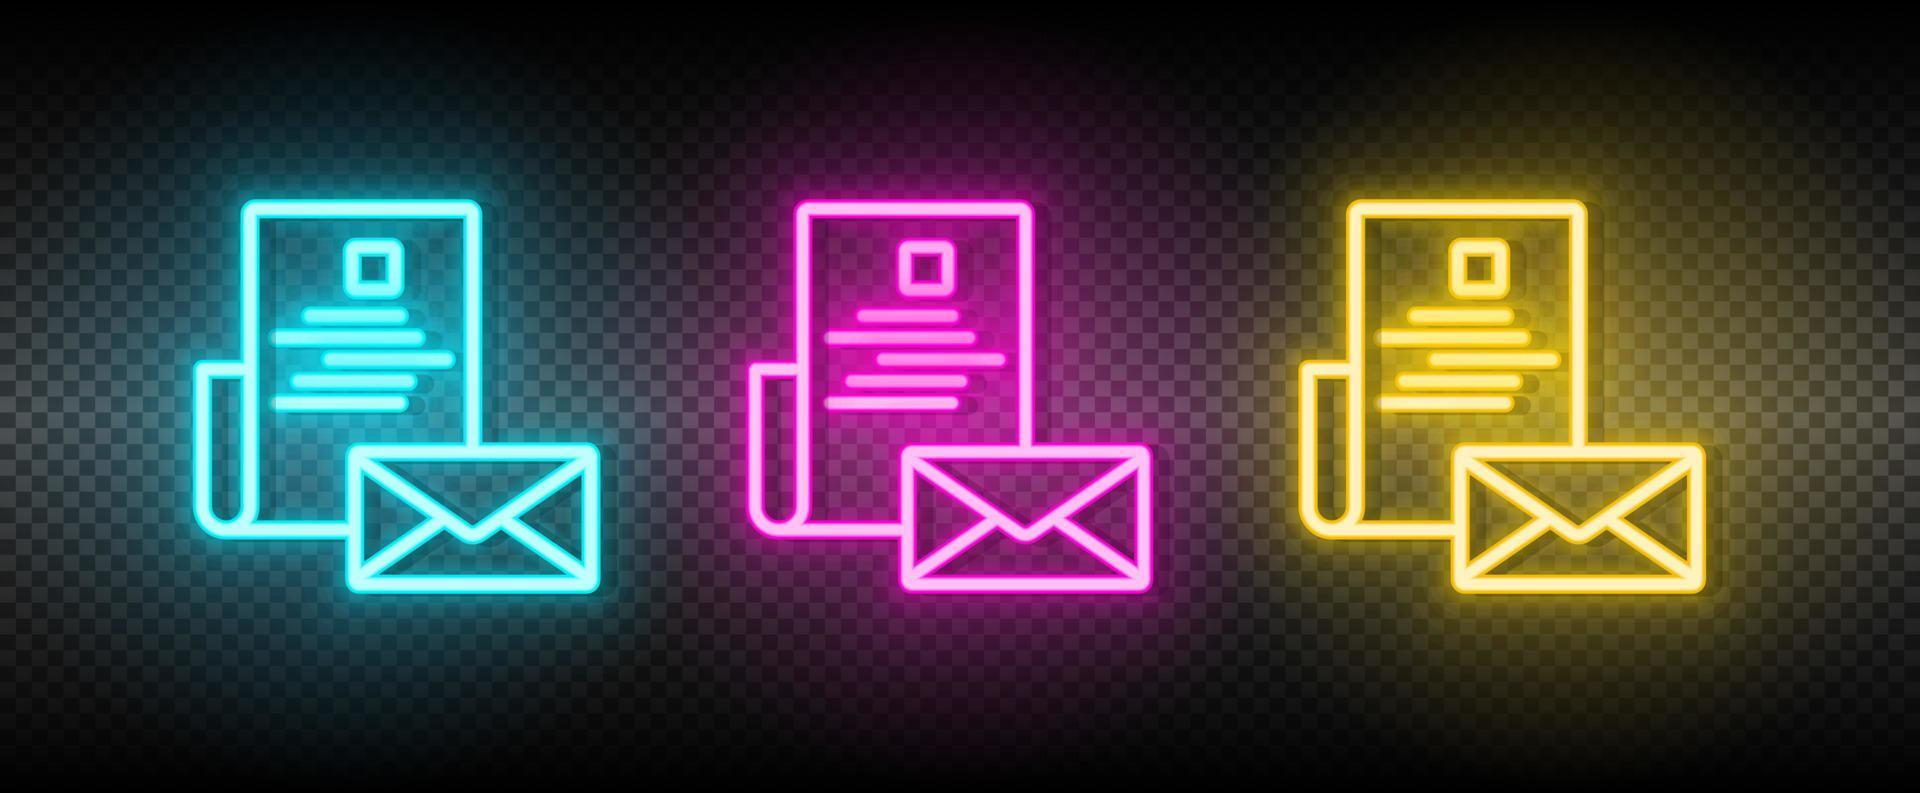 e-mail, post neon icoon set. media afzet vector illustratie neon blauw, geel, rood icoon reeks